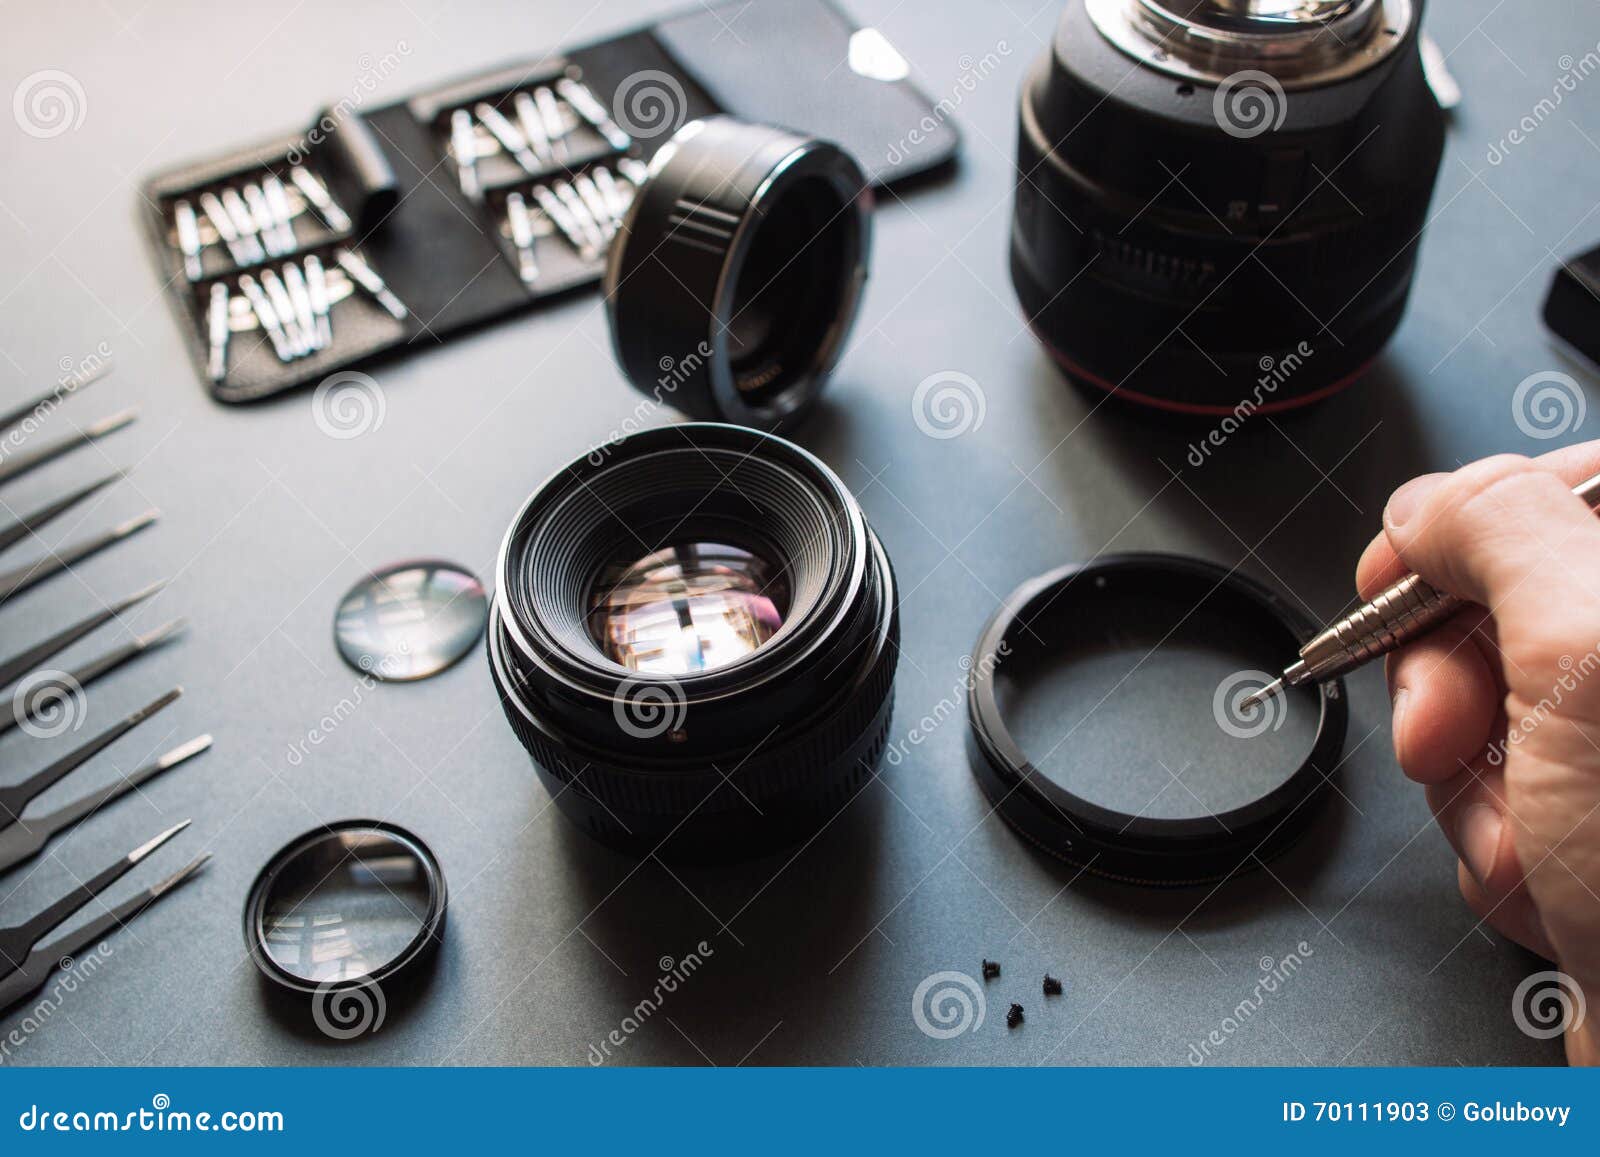 lens repair